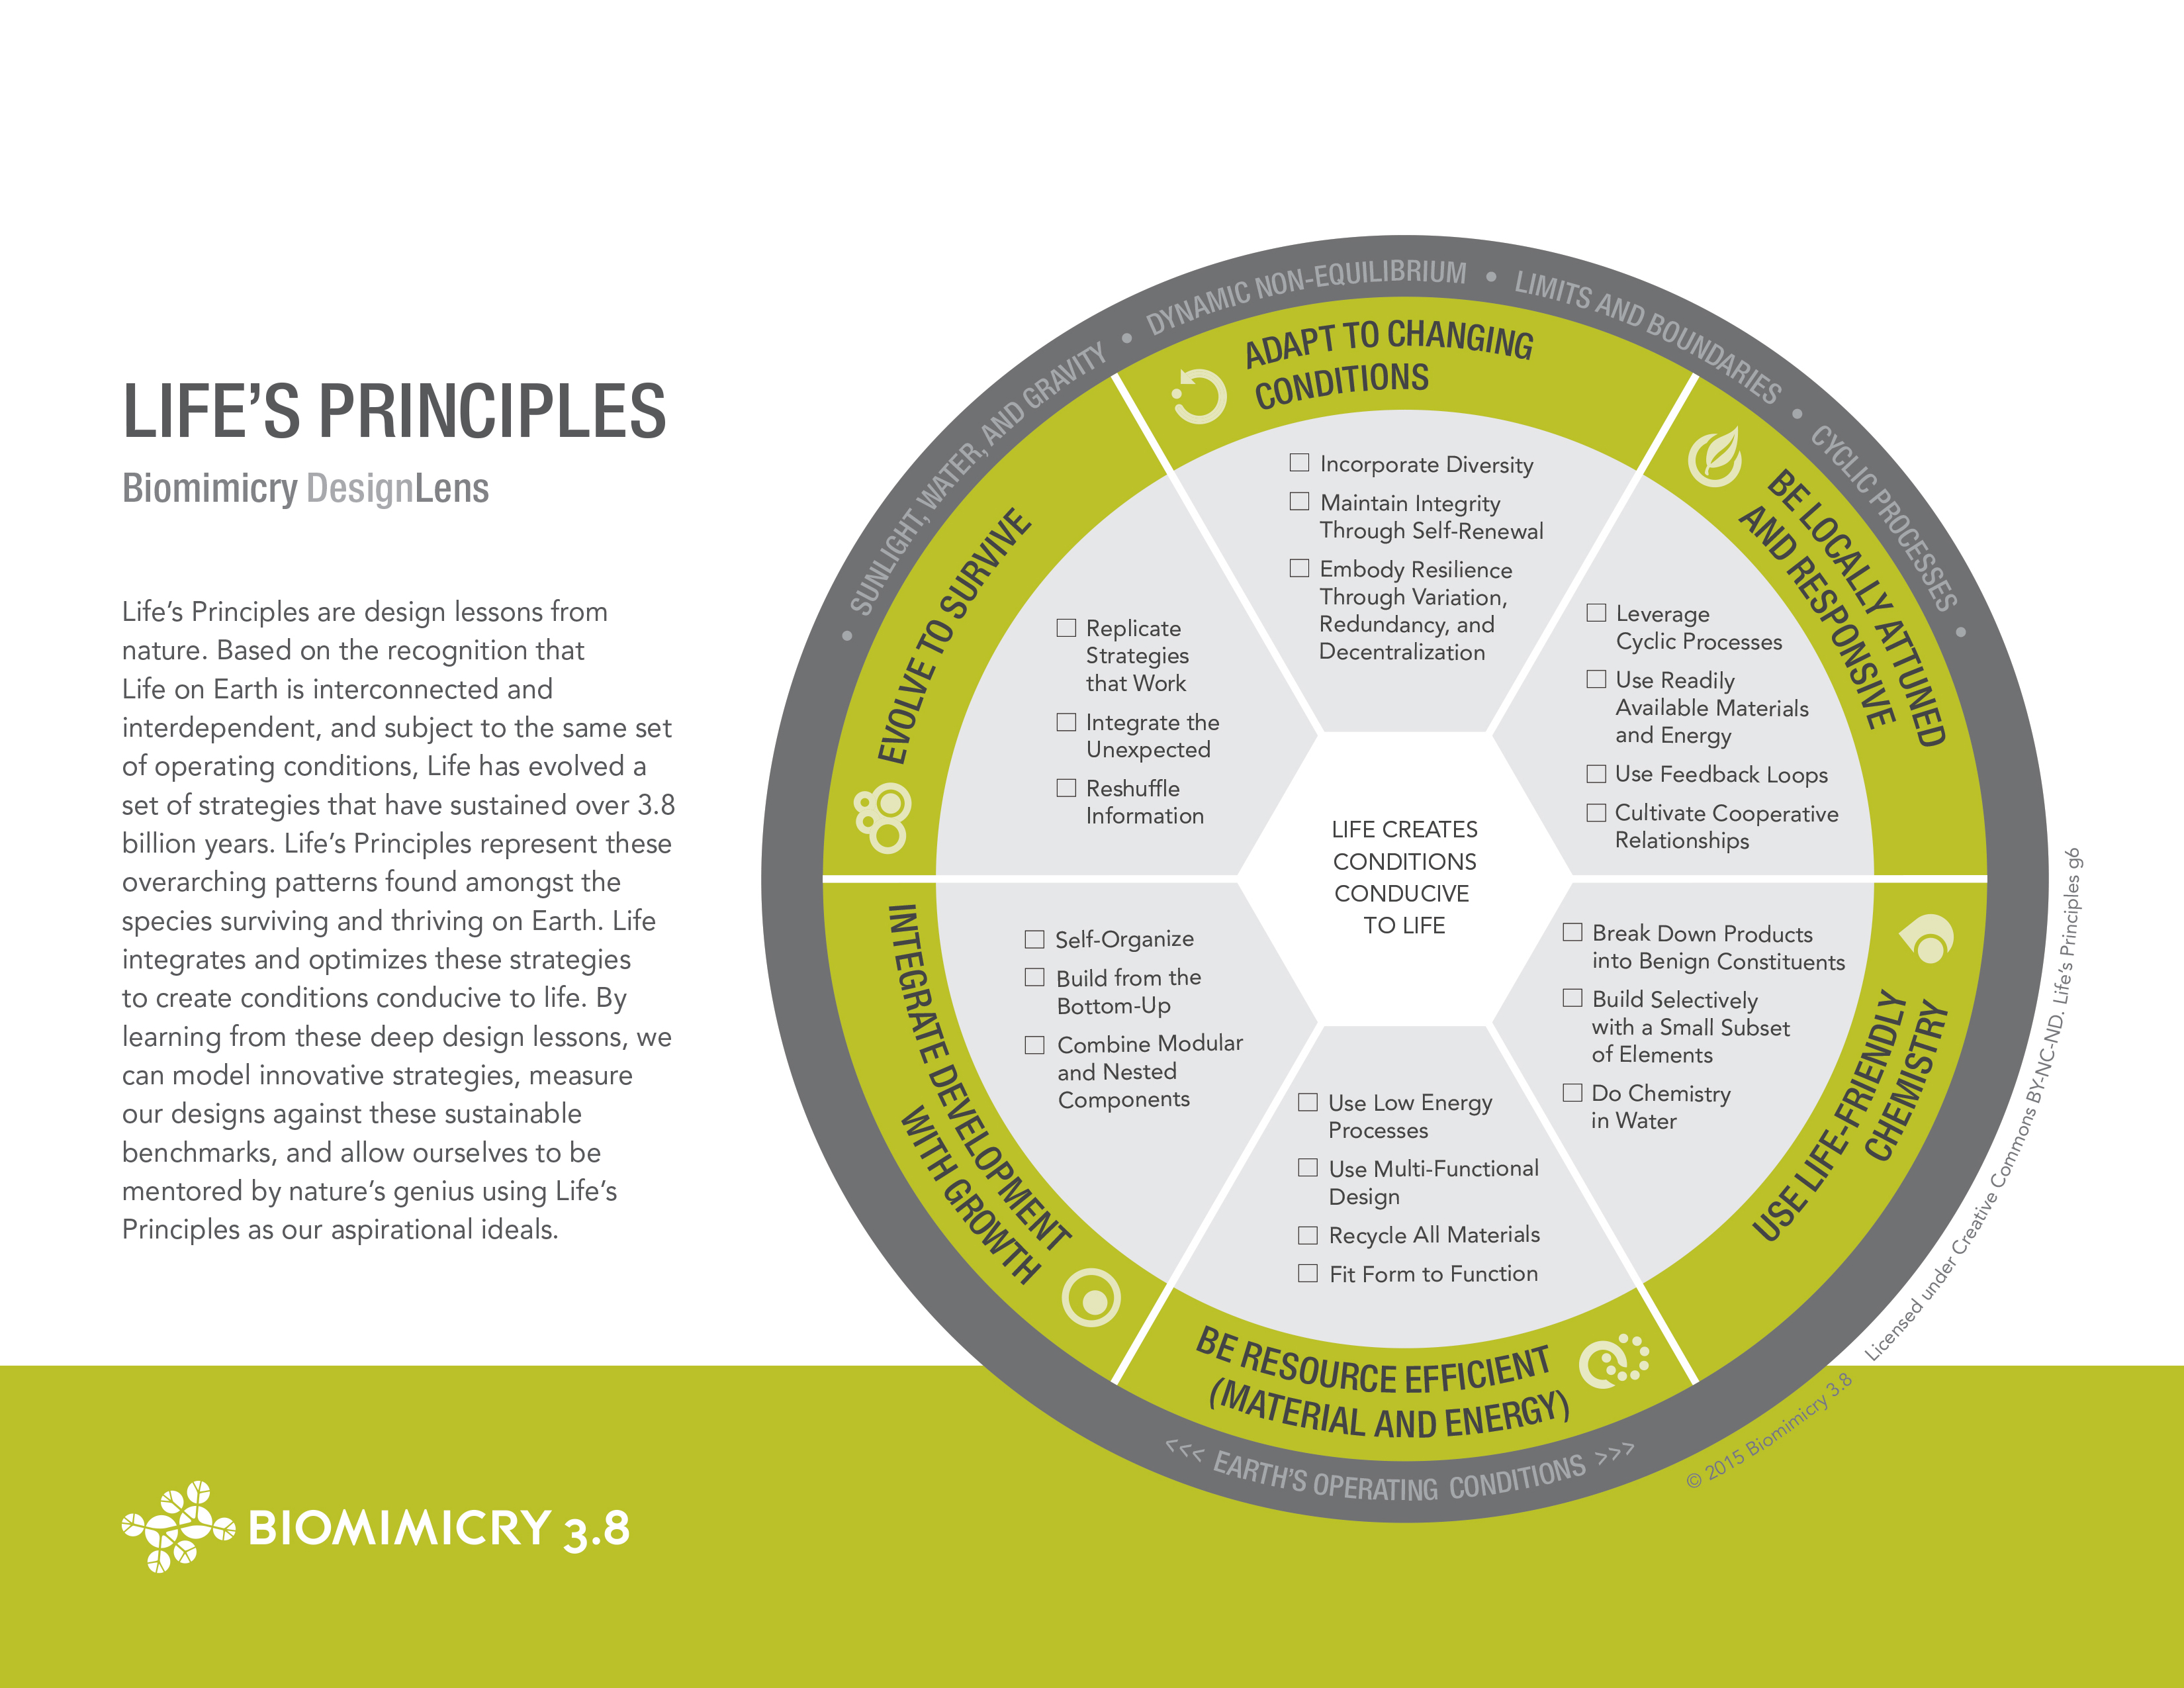 lifes-principles-handout-biomimicry38-1.jpg